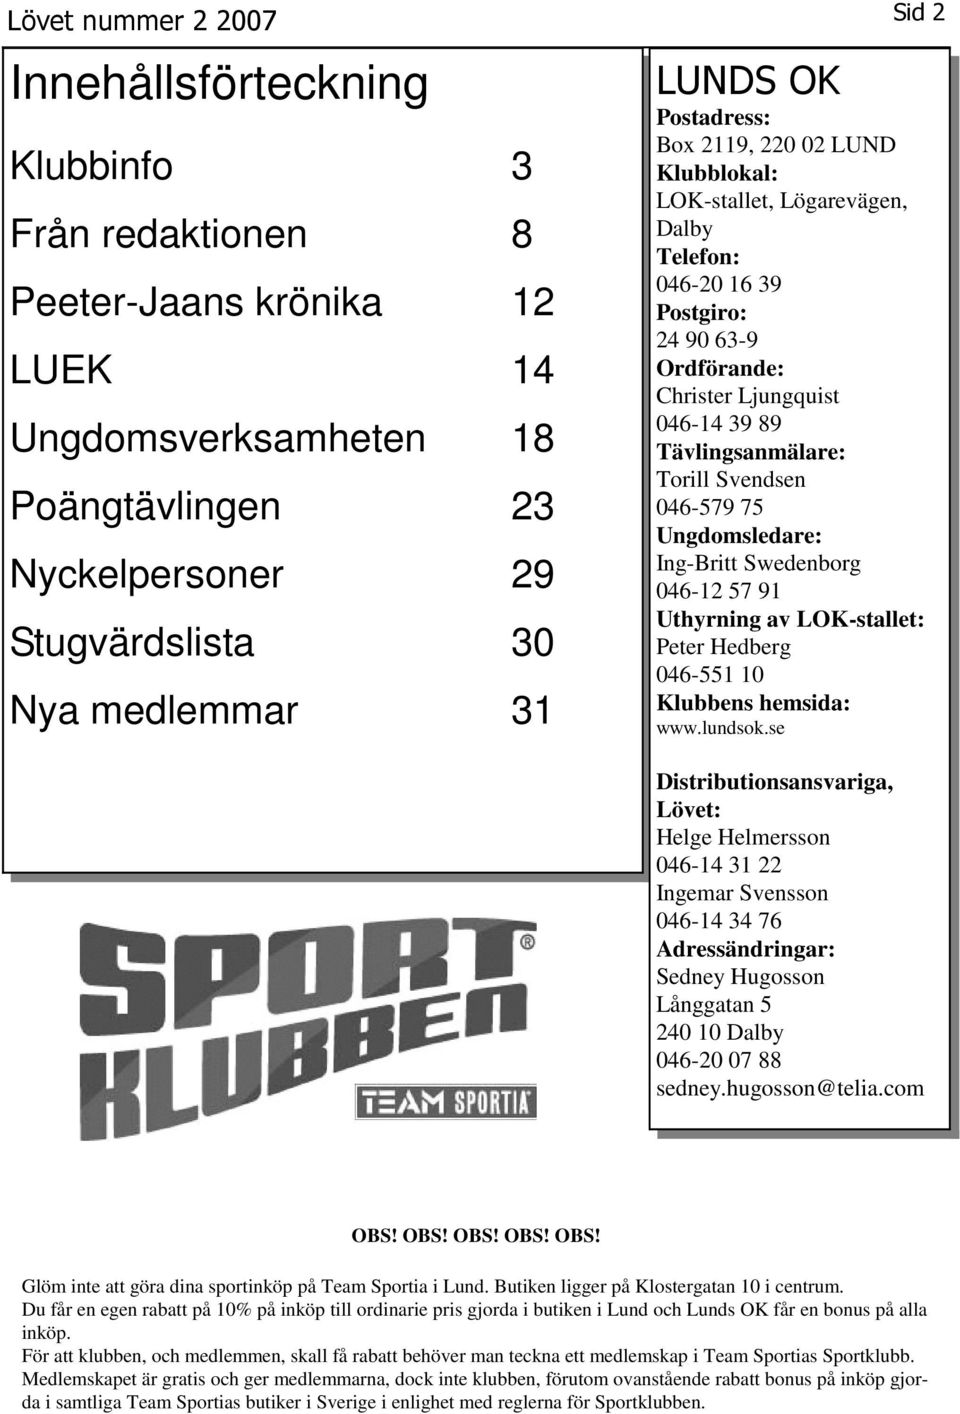 046579 75 Ungdomsledare: IngBritt Swedenborg 04612 57 91 Uthyrning av LOKstallet: Peter Hedberg 046551 10 Klubbens hemsida: www.lundsok.